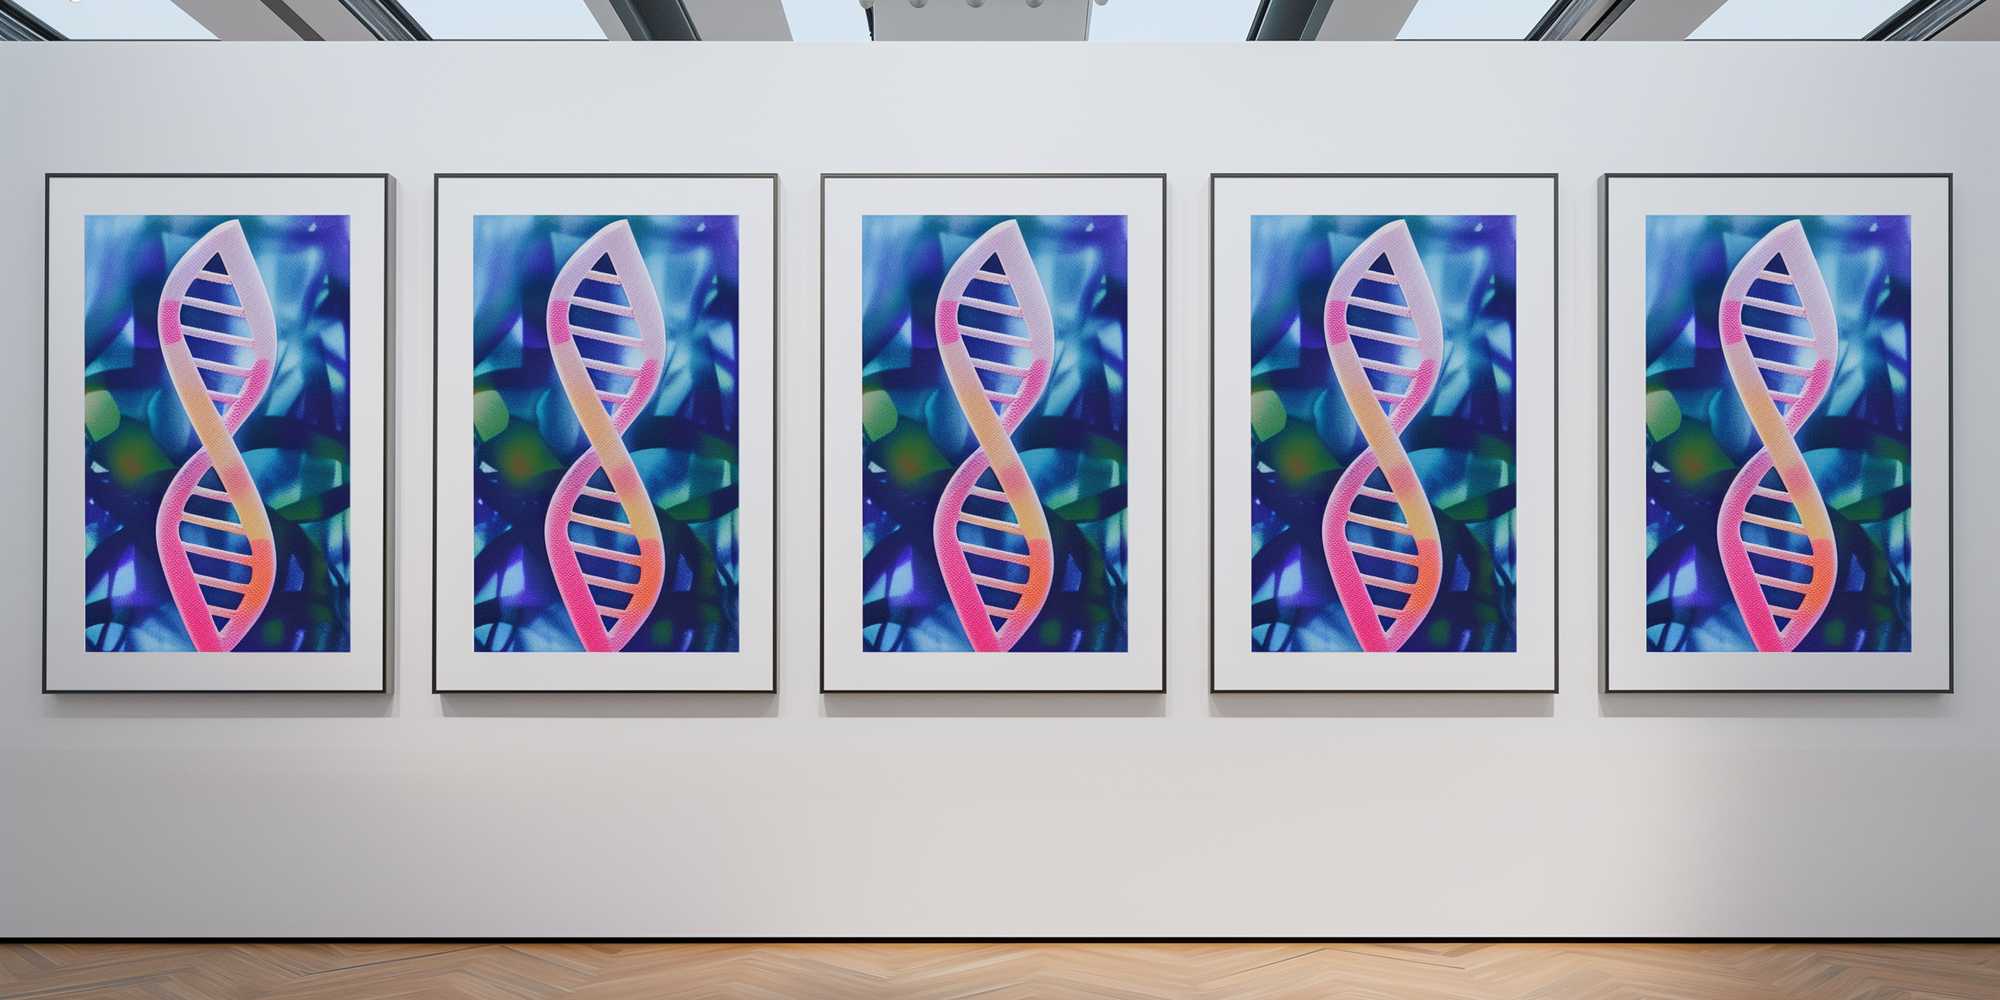 Fünf idenentische Kunstwerke, die eine DNA-Hoppelhelix zeigen